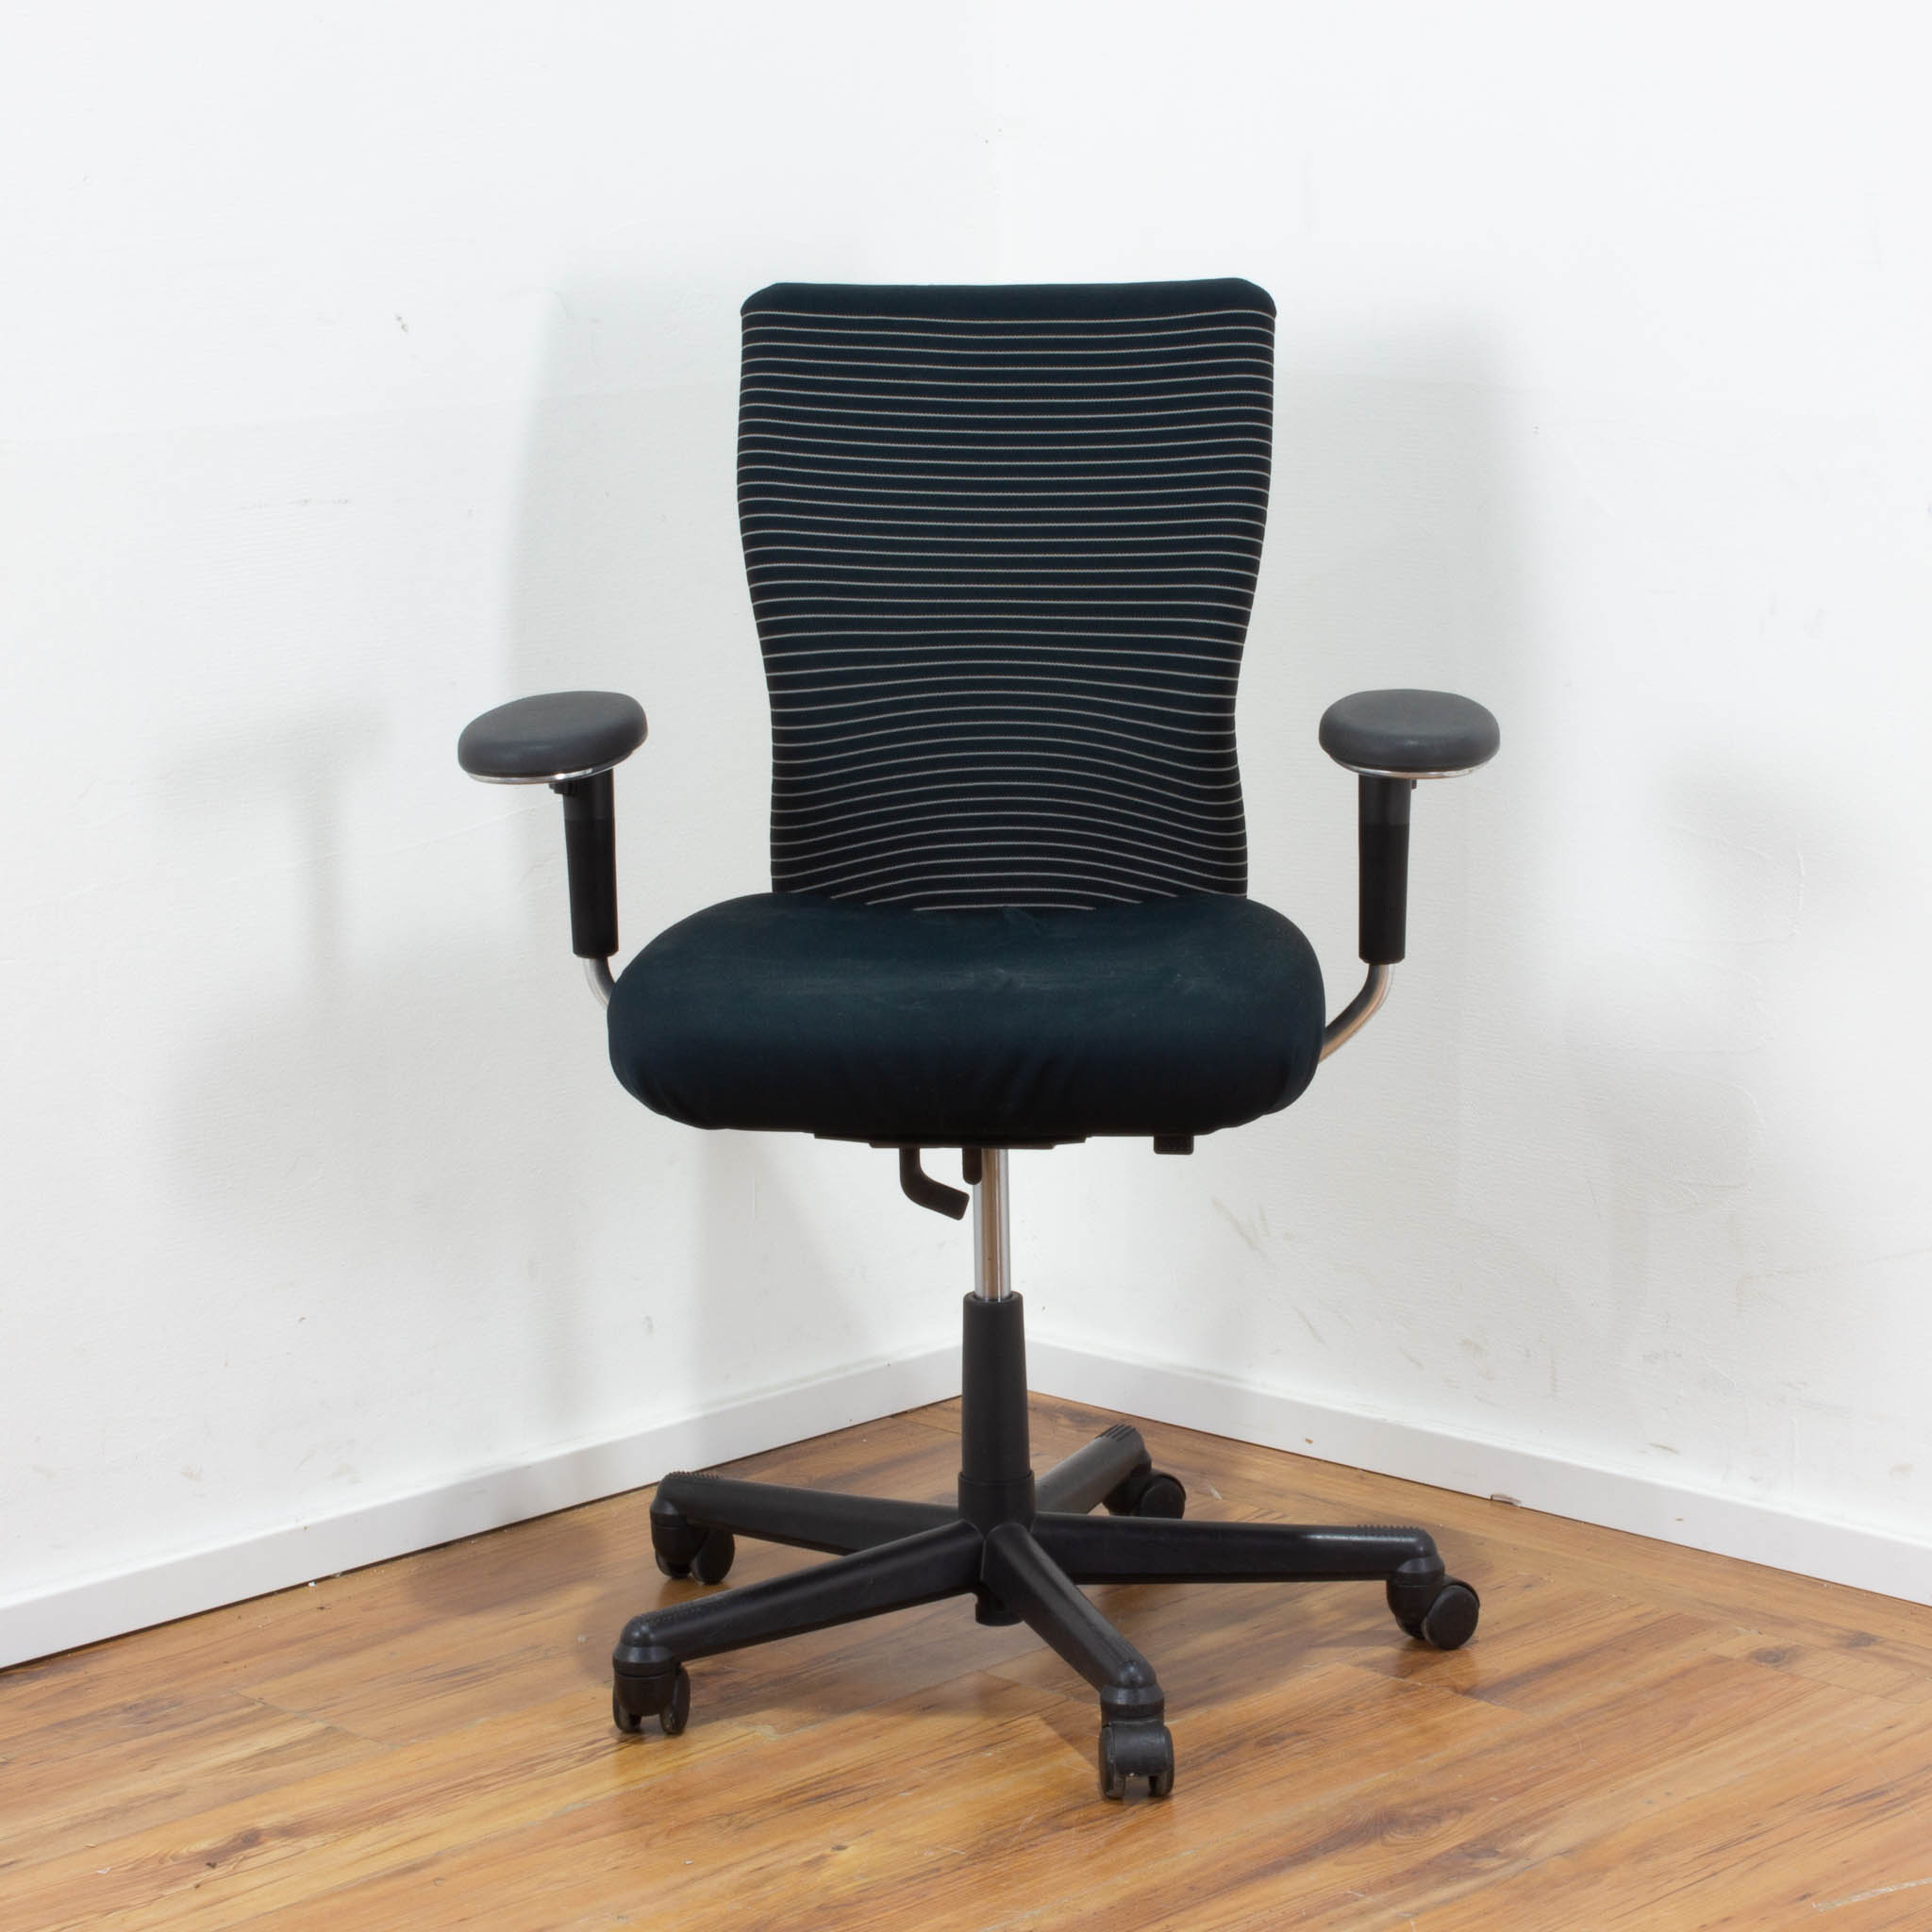 Vitra Bürodrehstuhl "T-Chair" - Stoff in schwarz - Gestell schwarz